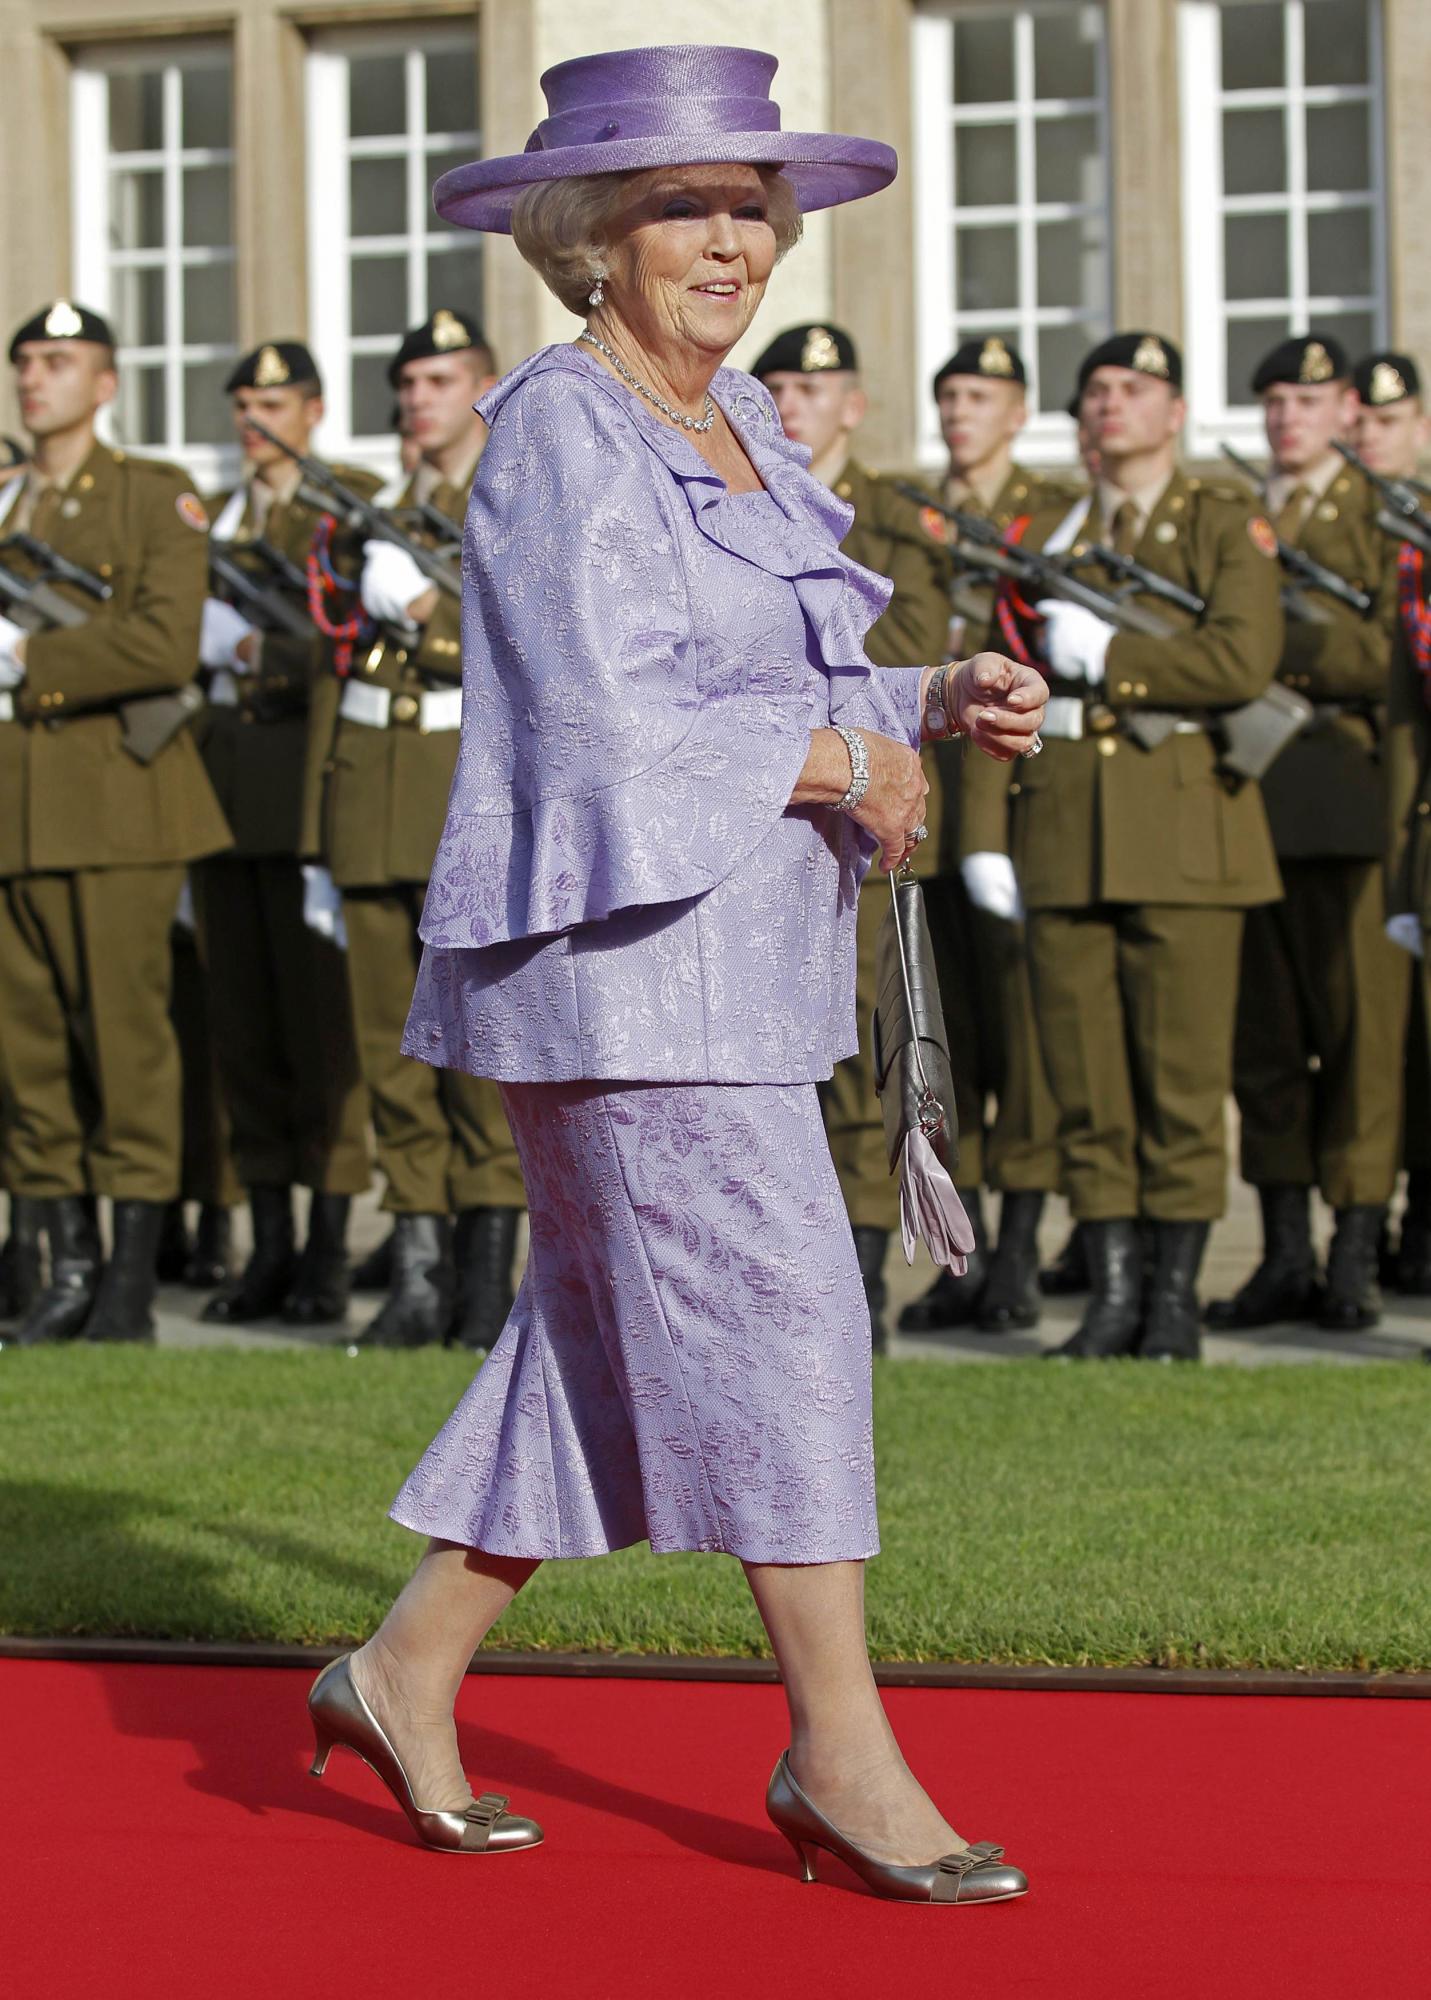 75岁荷兰女王宣布退位长子接班 “老王储”查尔斯再被调侃